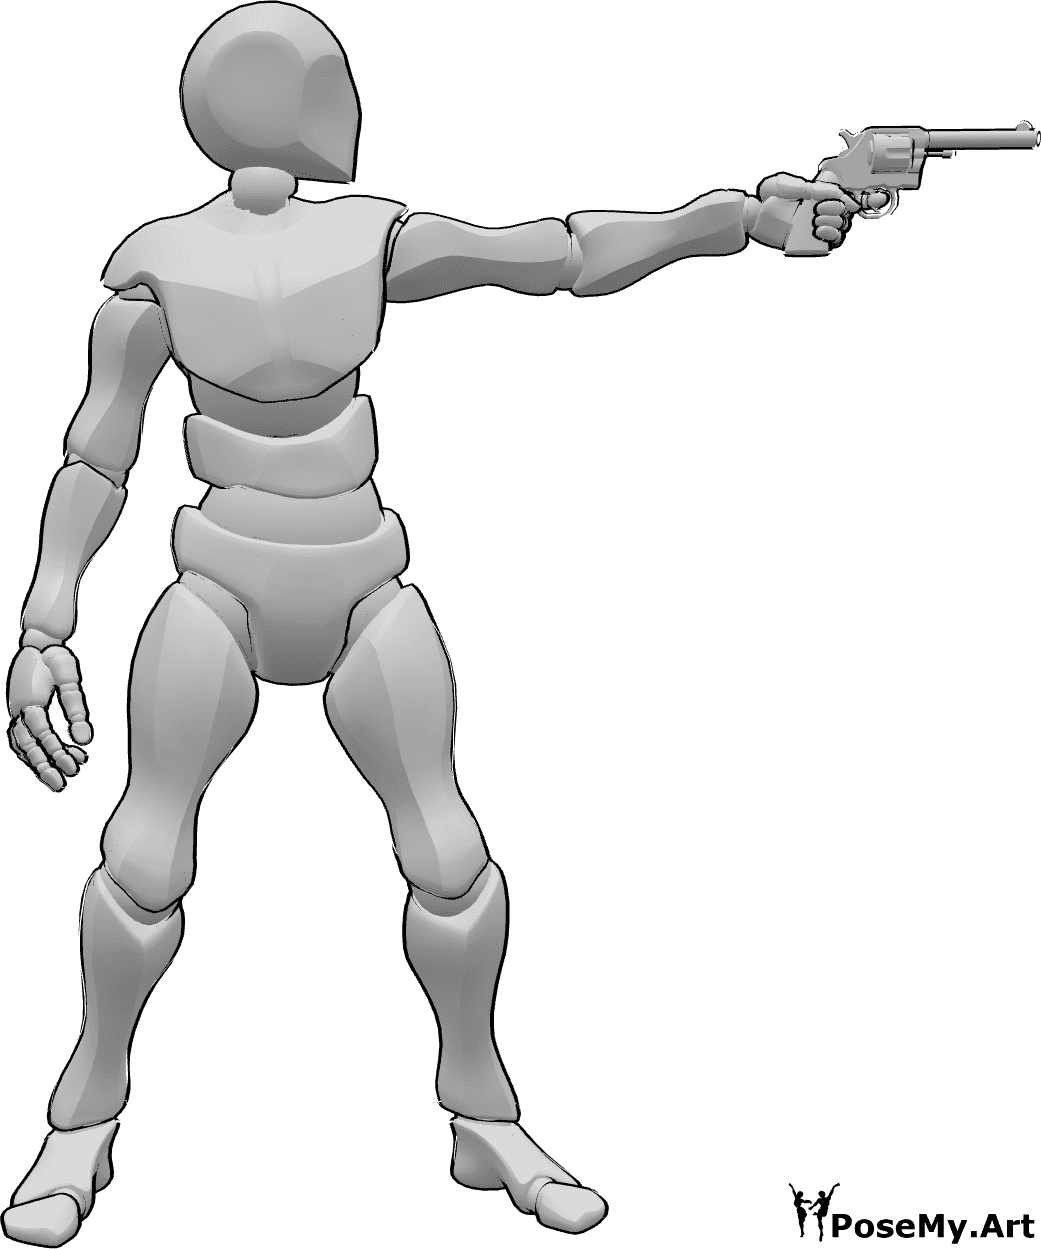 Referencia de poses- Postura masculina de puntería - El hombre está apuntando con su arma a la pose del objetivo